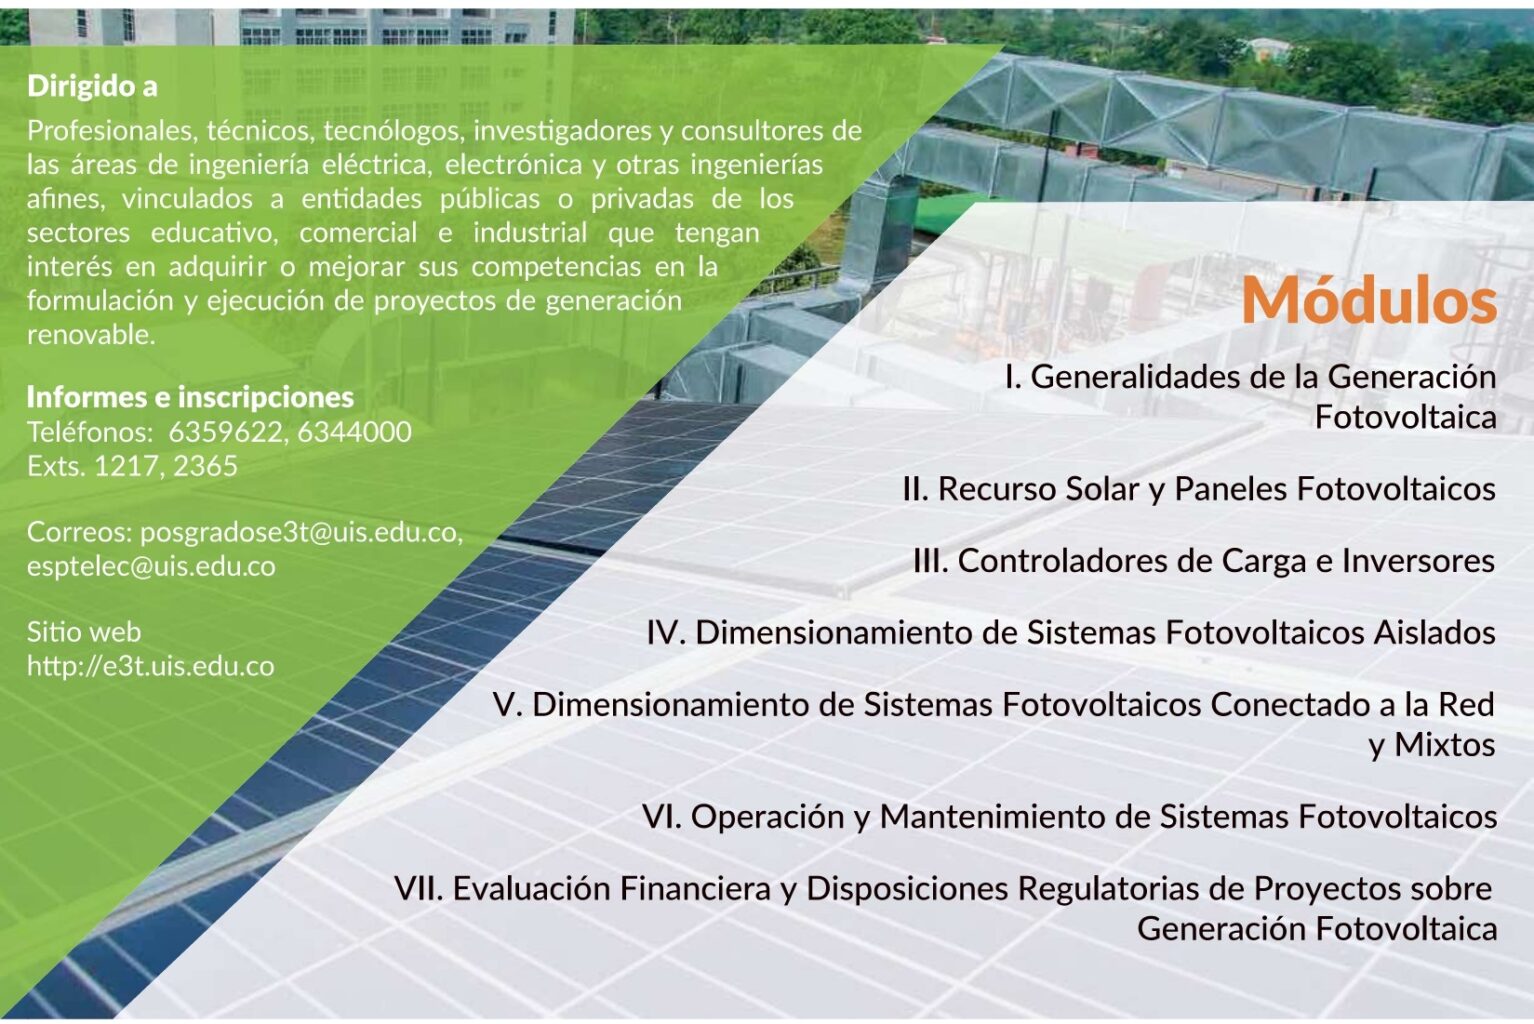 Pieza gráfica del diplomado en Dimensionamiento y Operación de Sistemas Fotovoltaicos.